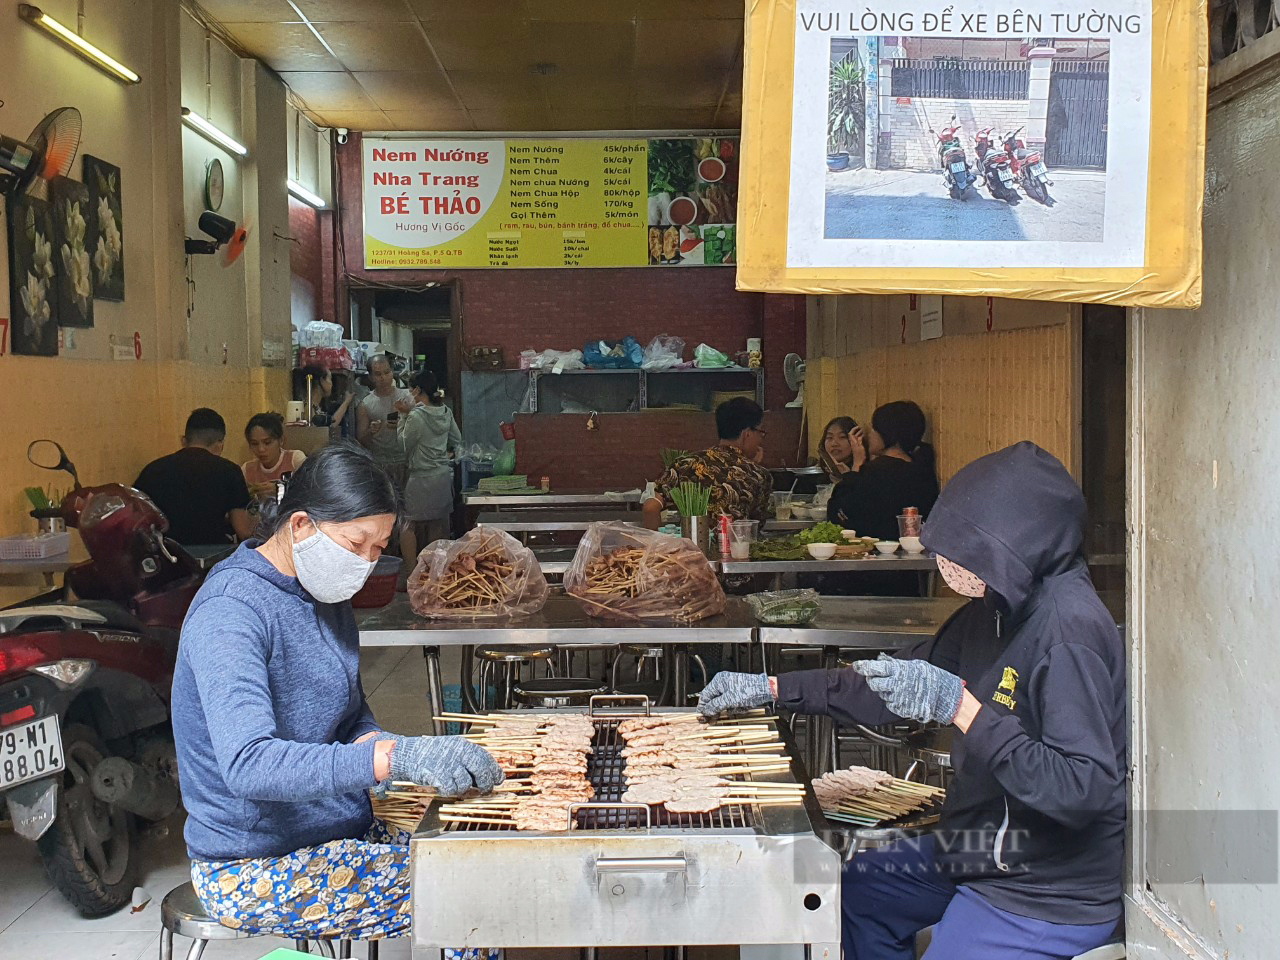 Sài Gòn quán: Nem nướng Nha Trang chính gốc ở Sài Gòn, ăn ở đâu? - Ảnh 4.